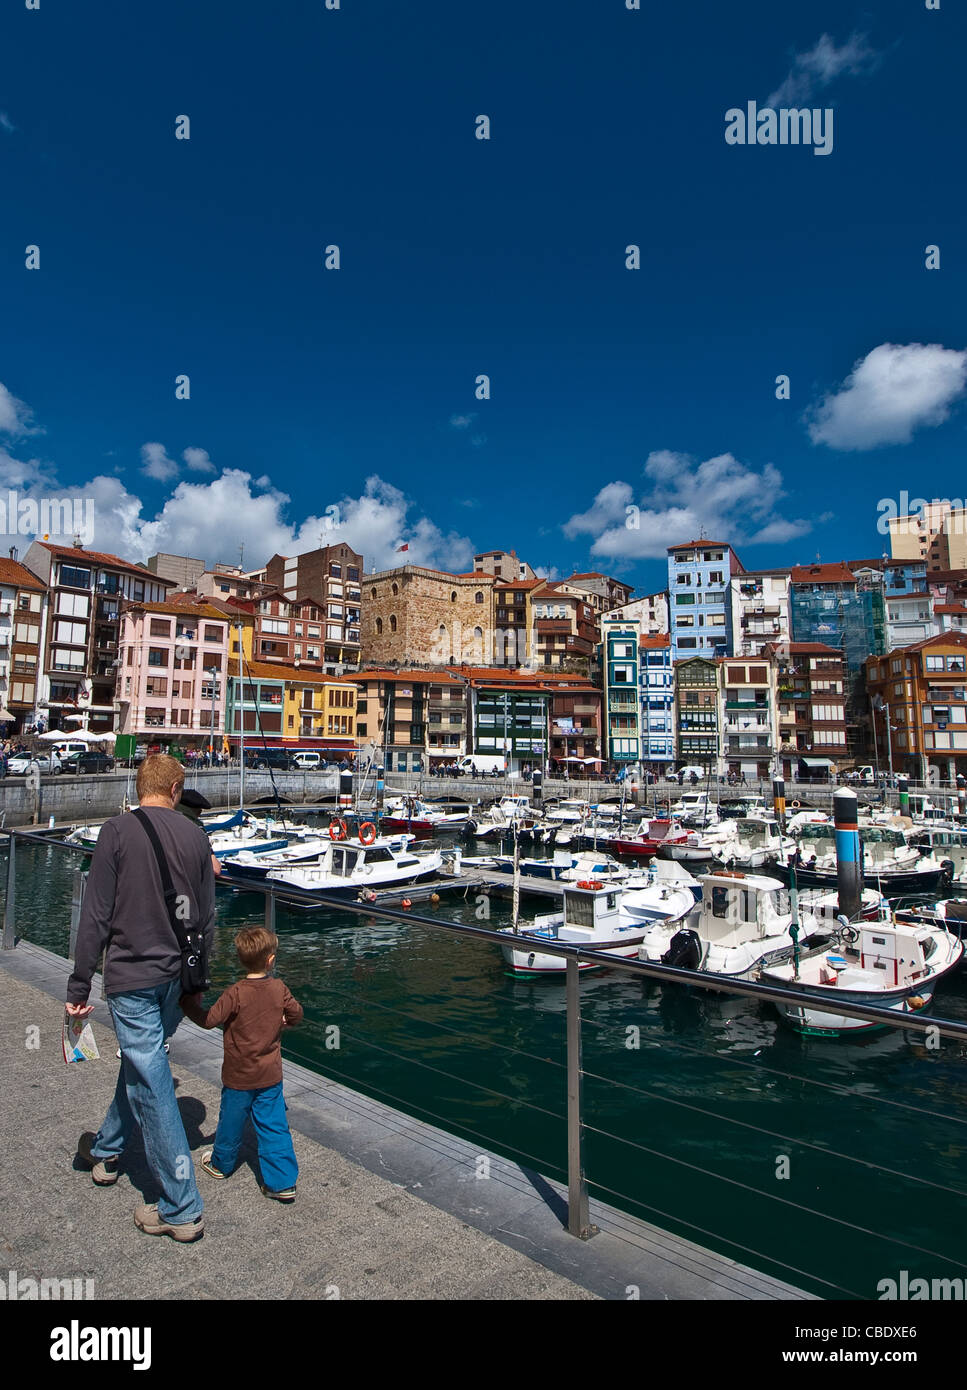 Hafen von Bermeo, Bizkaia, Bizcaye, Baskenland, Spanien / Puerto y Ayuntamiento de Bermeo, Vizcaya, Baskenland. Stockfoto